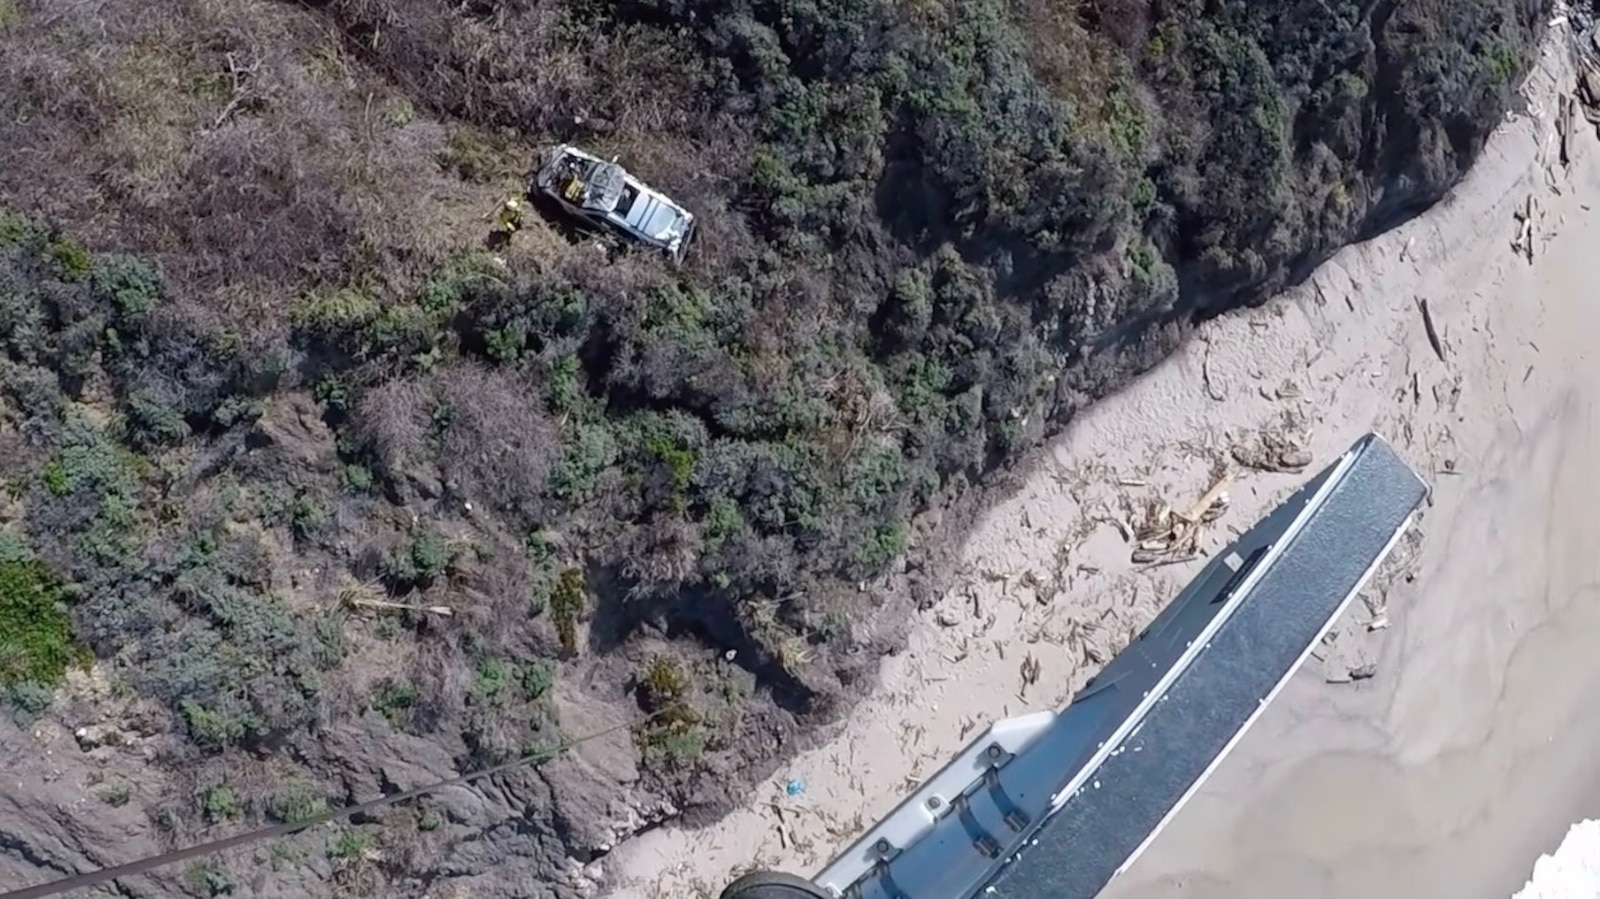 Man rescued 2 days after car rolls down Big Sur cliffside